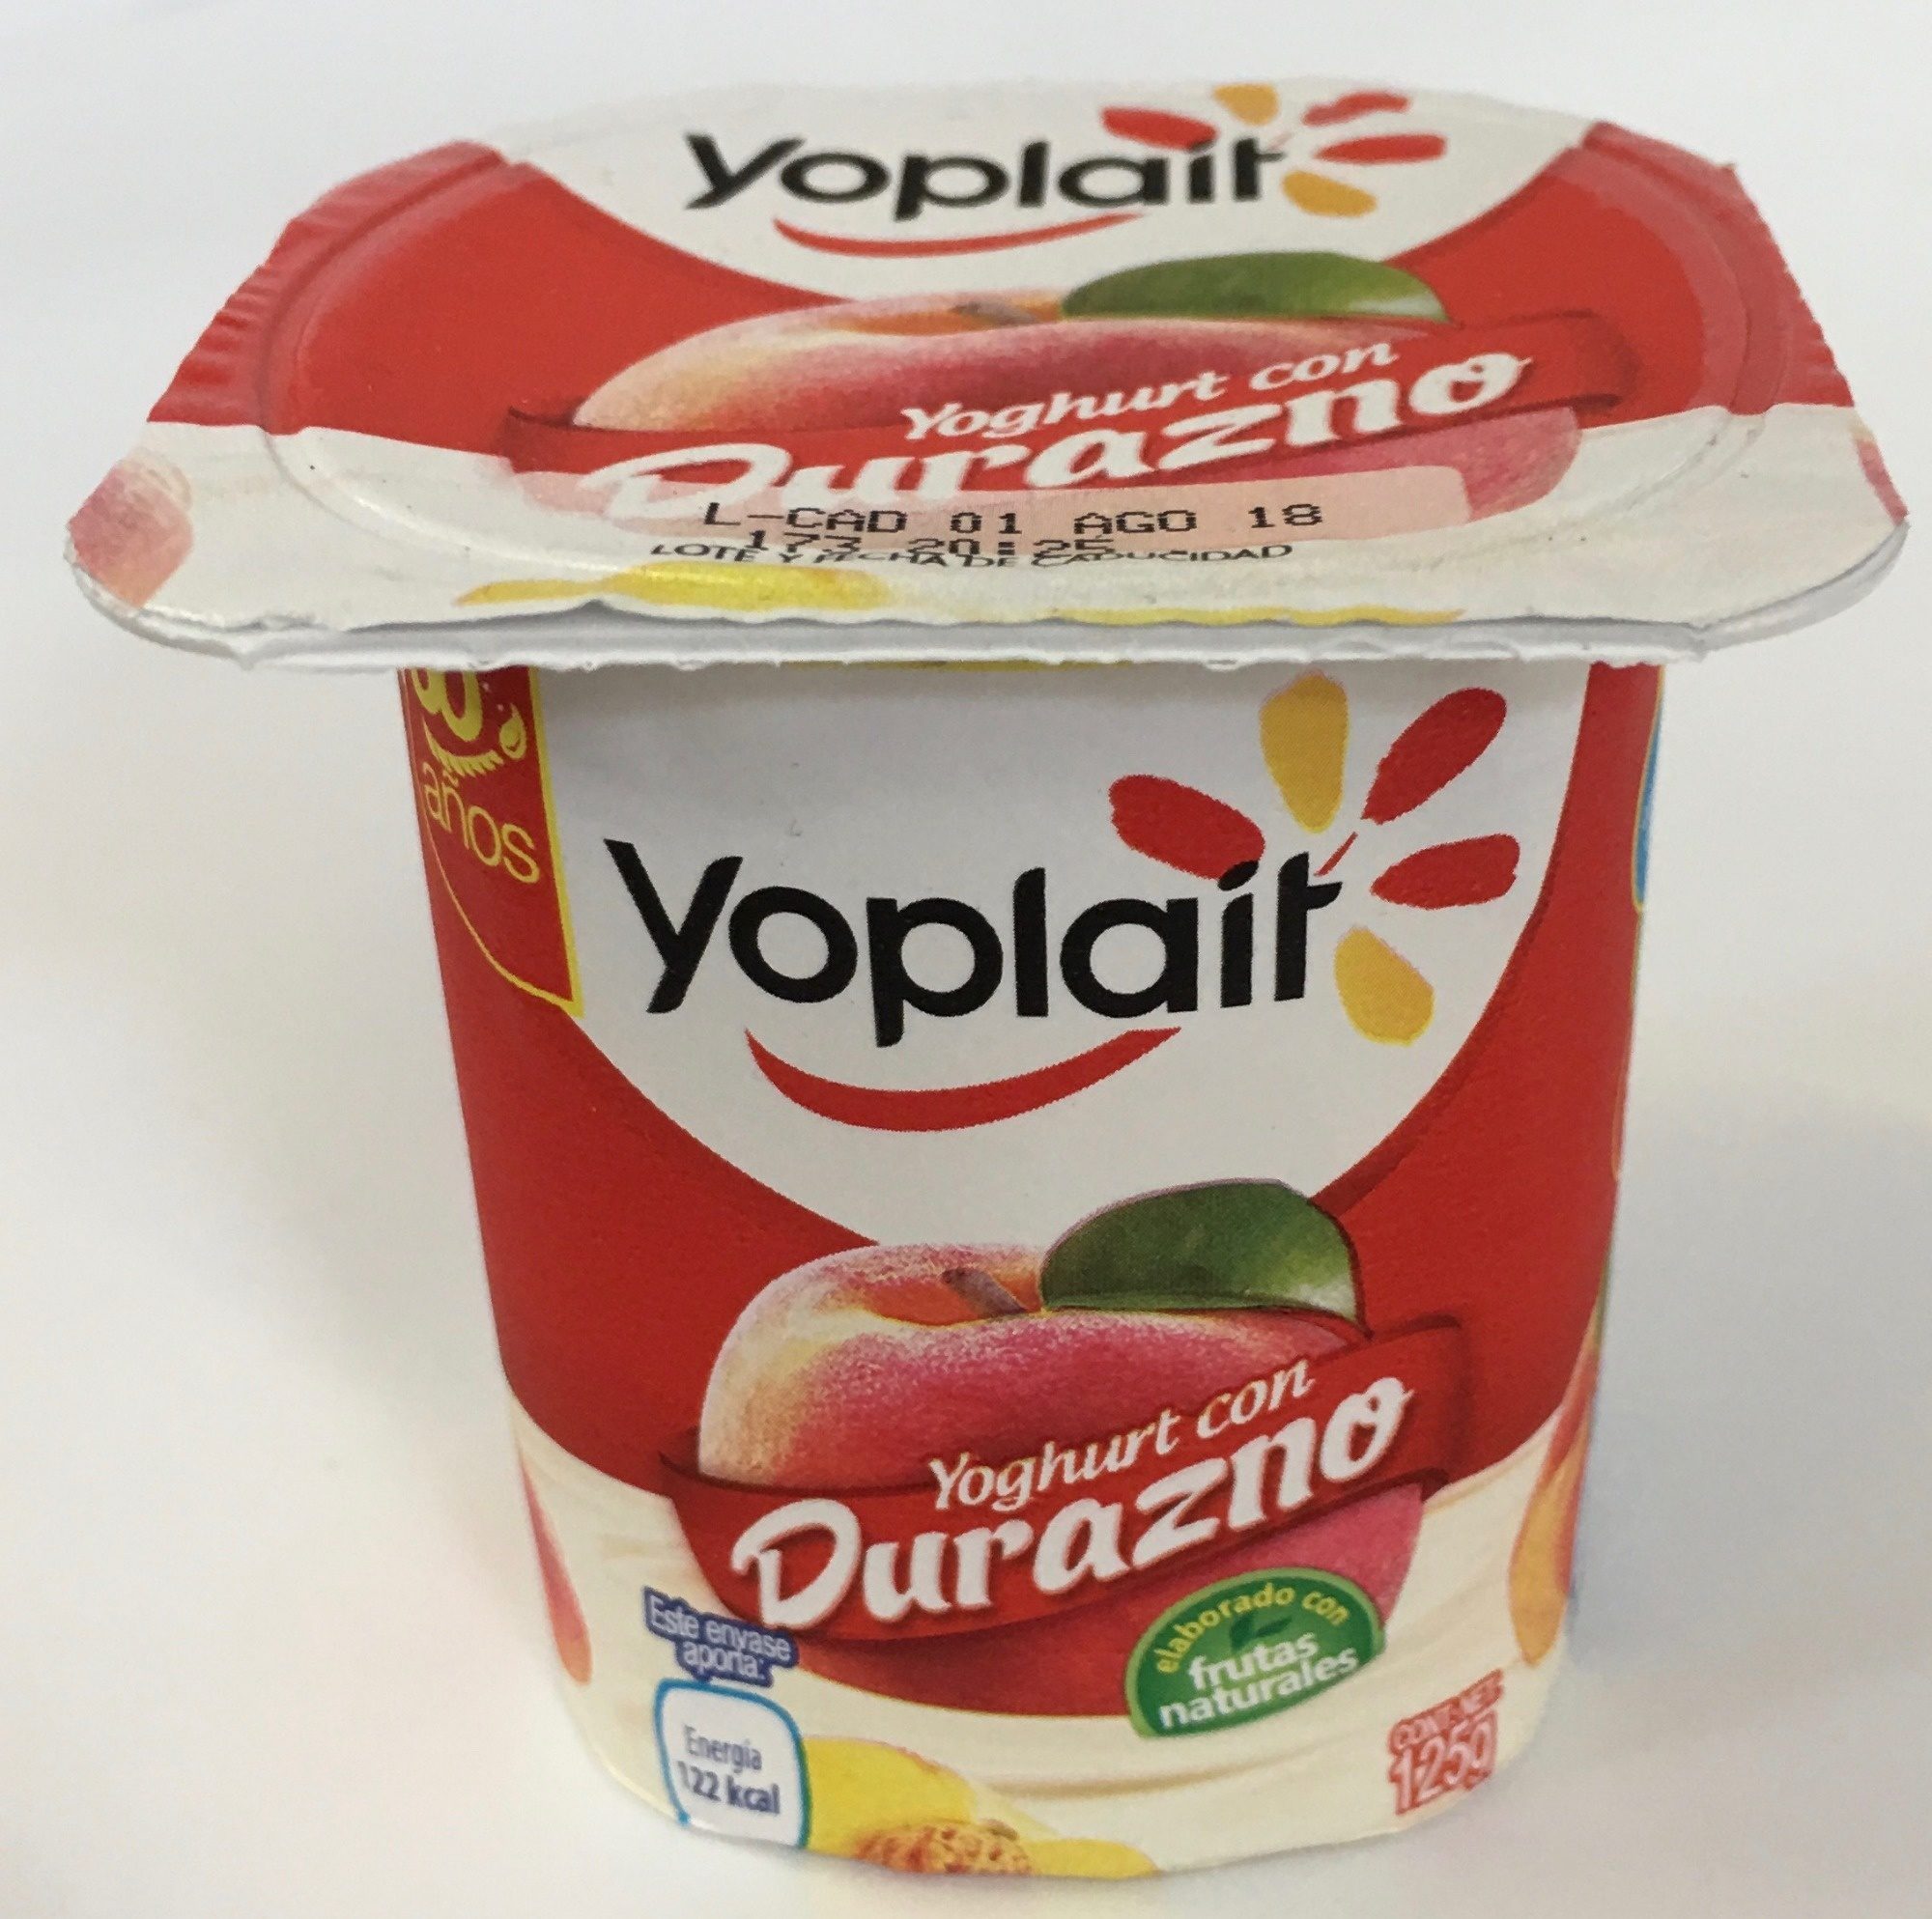 Yoplait Yoghurt con Durazno - Produkt - es